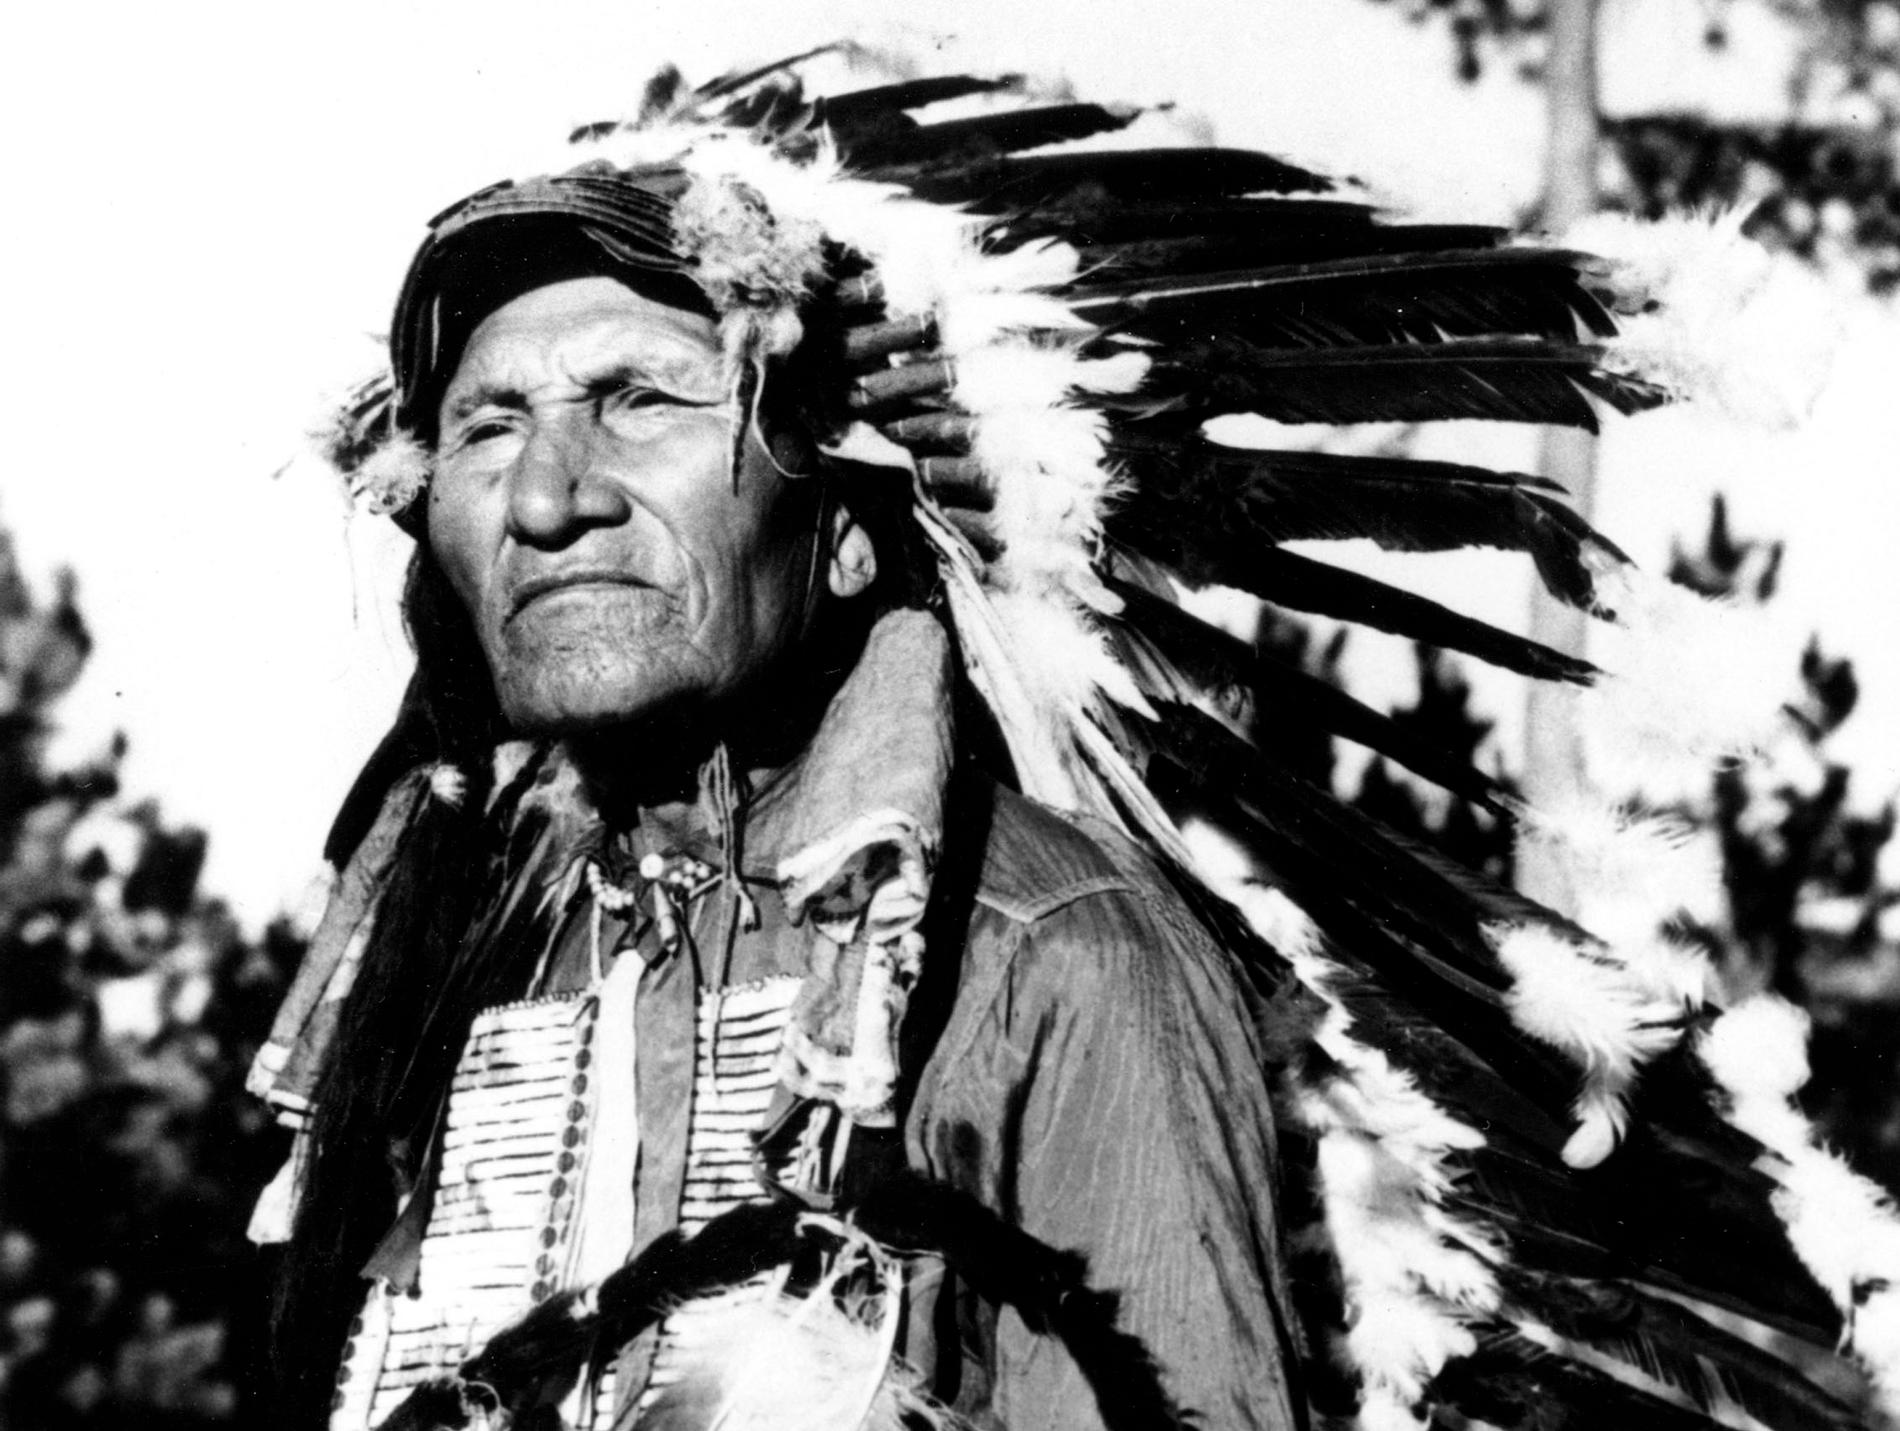 Originalet. Odaterat foto av Sitting Bull, död 1890.